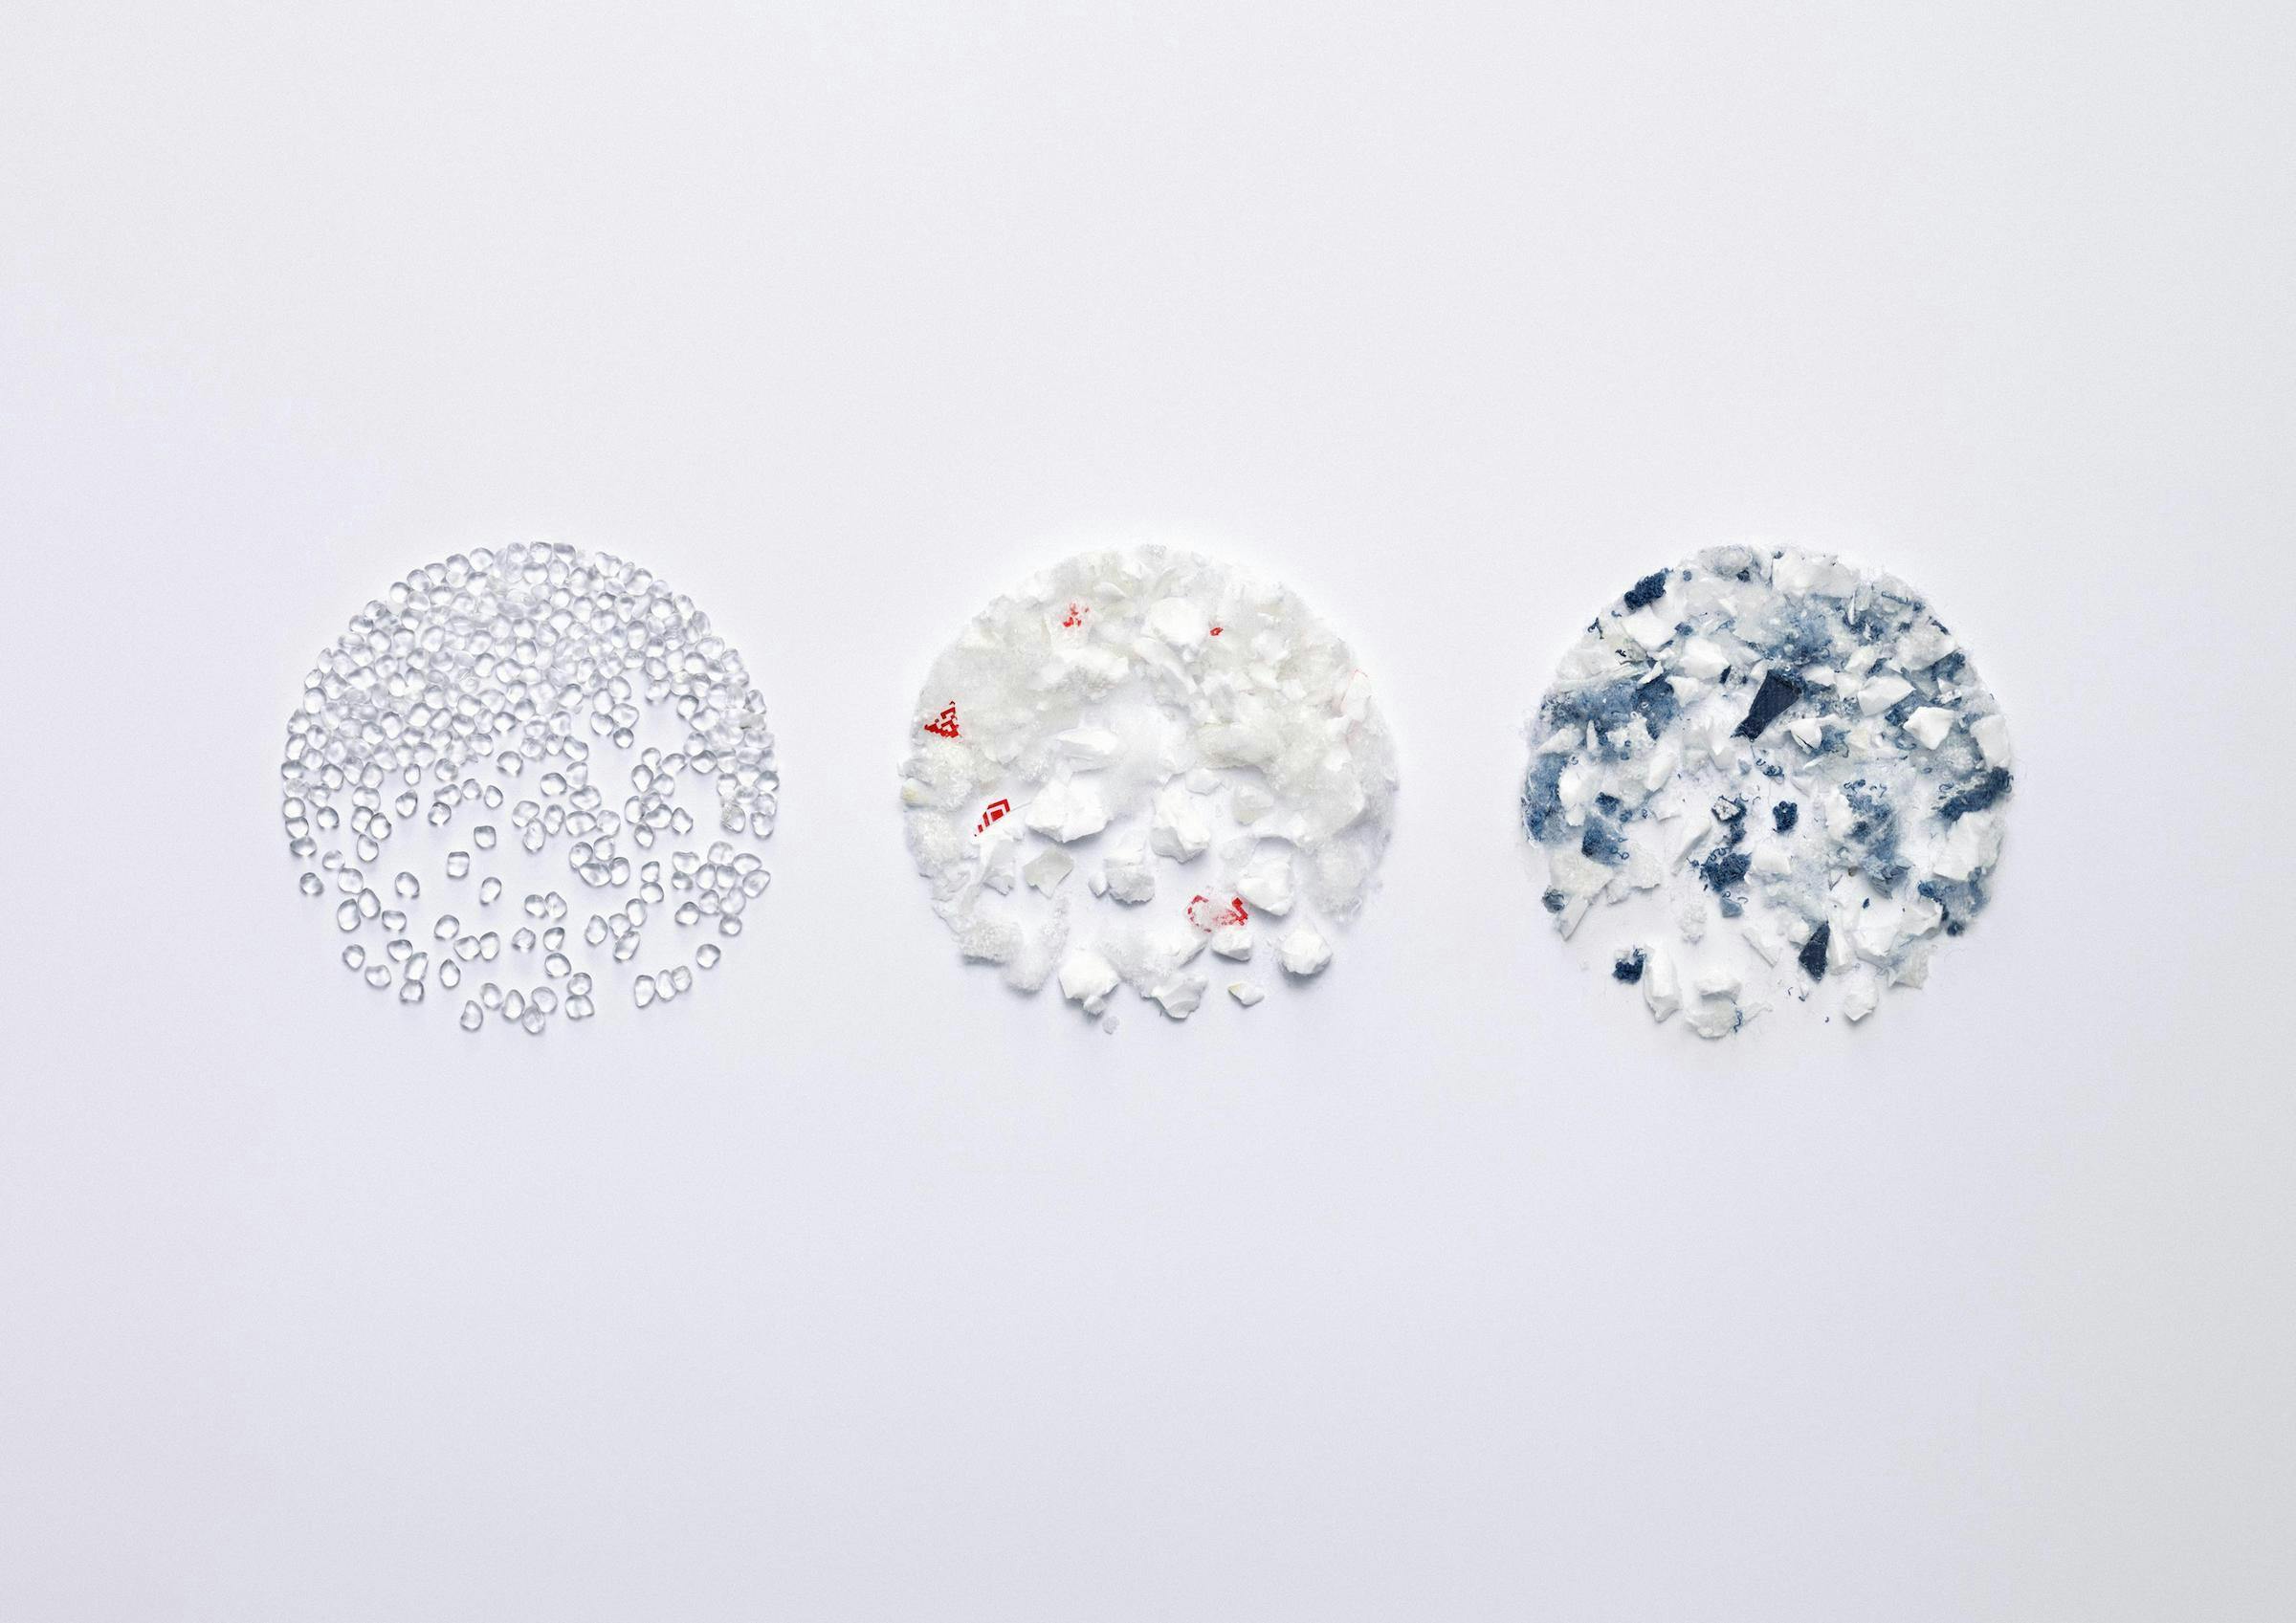 Materials in three circular shapes